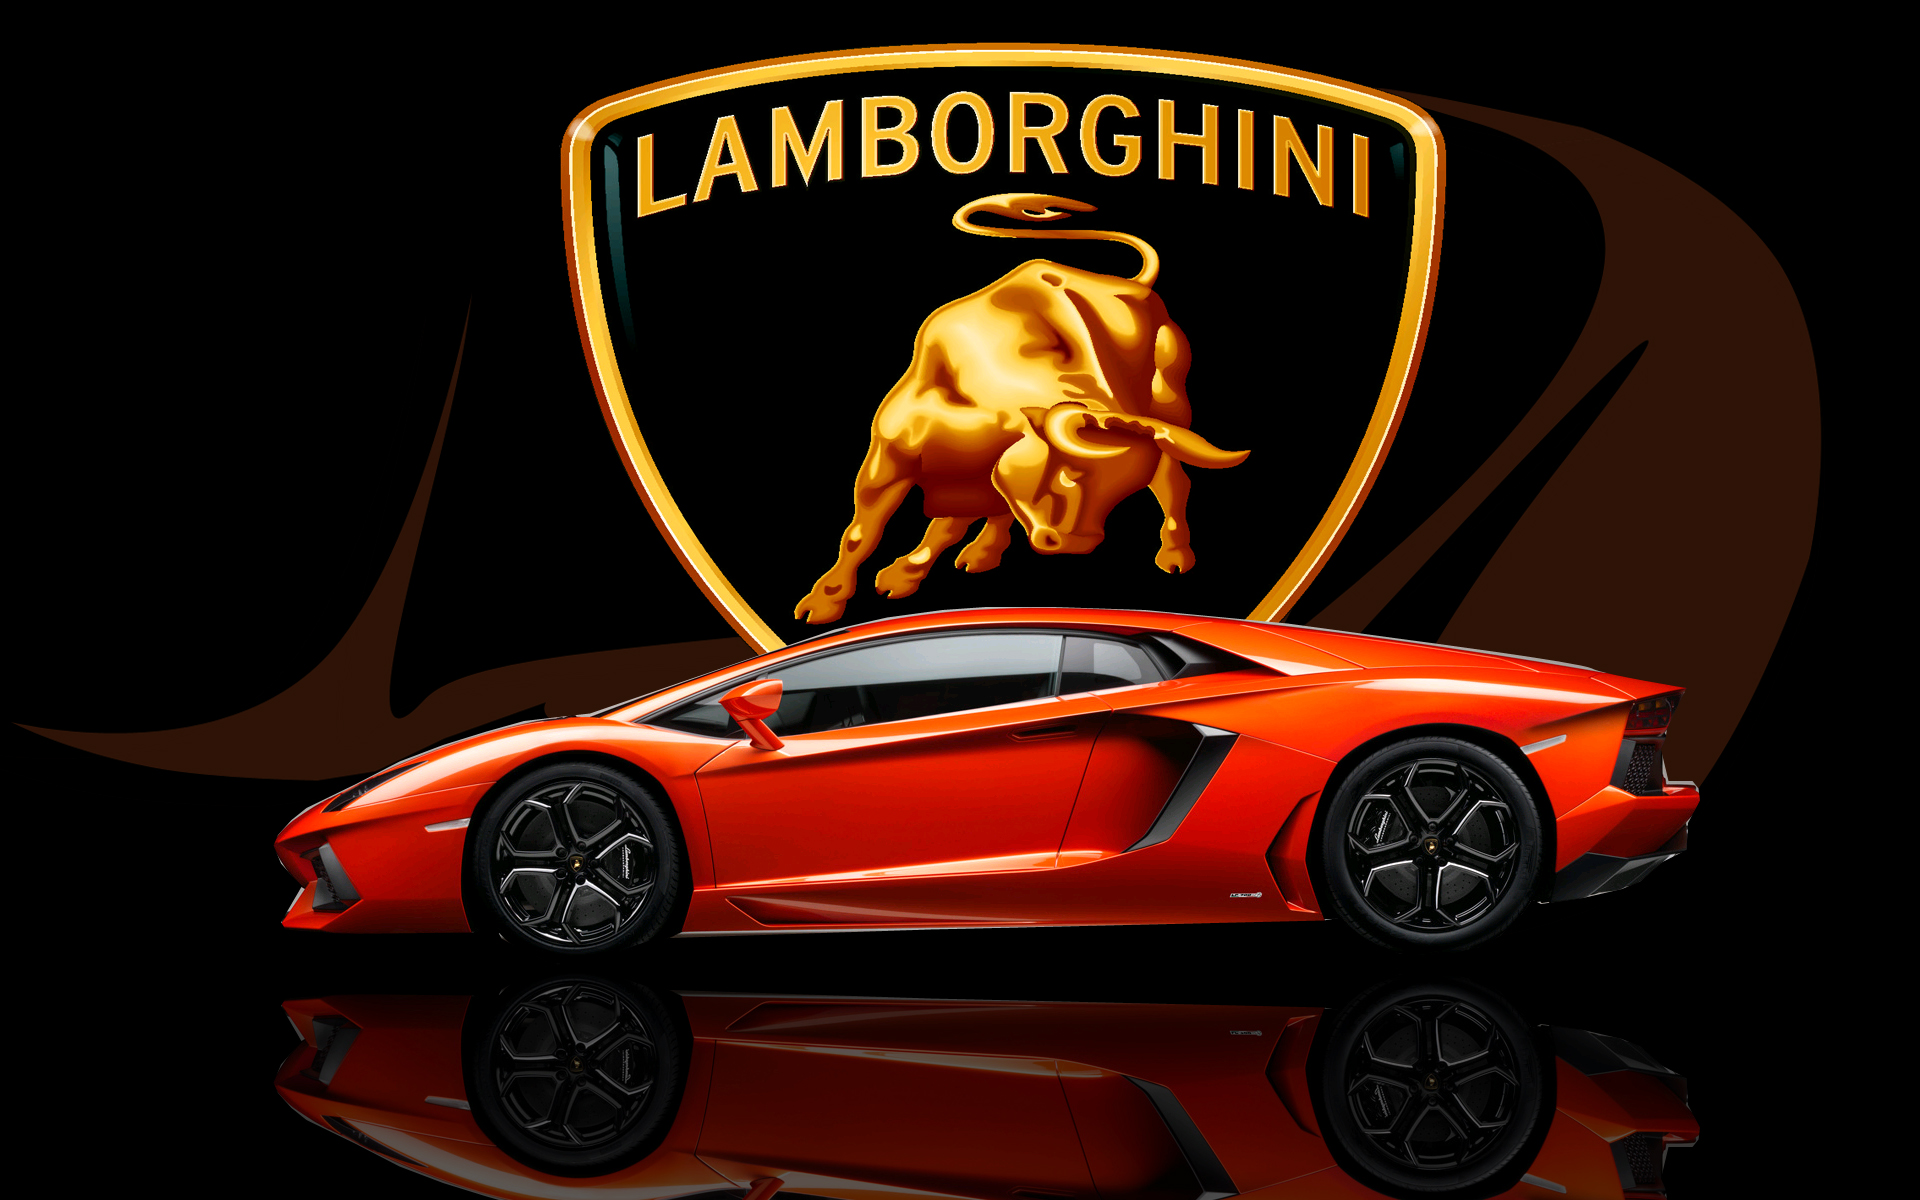 Hd Wallpaper Of Lamborghini Download